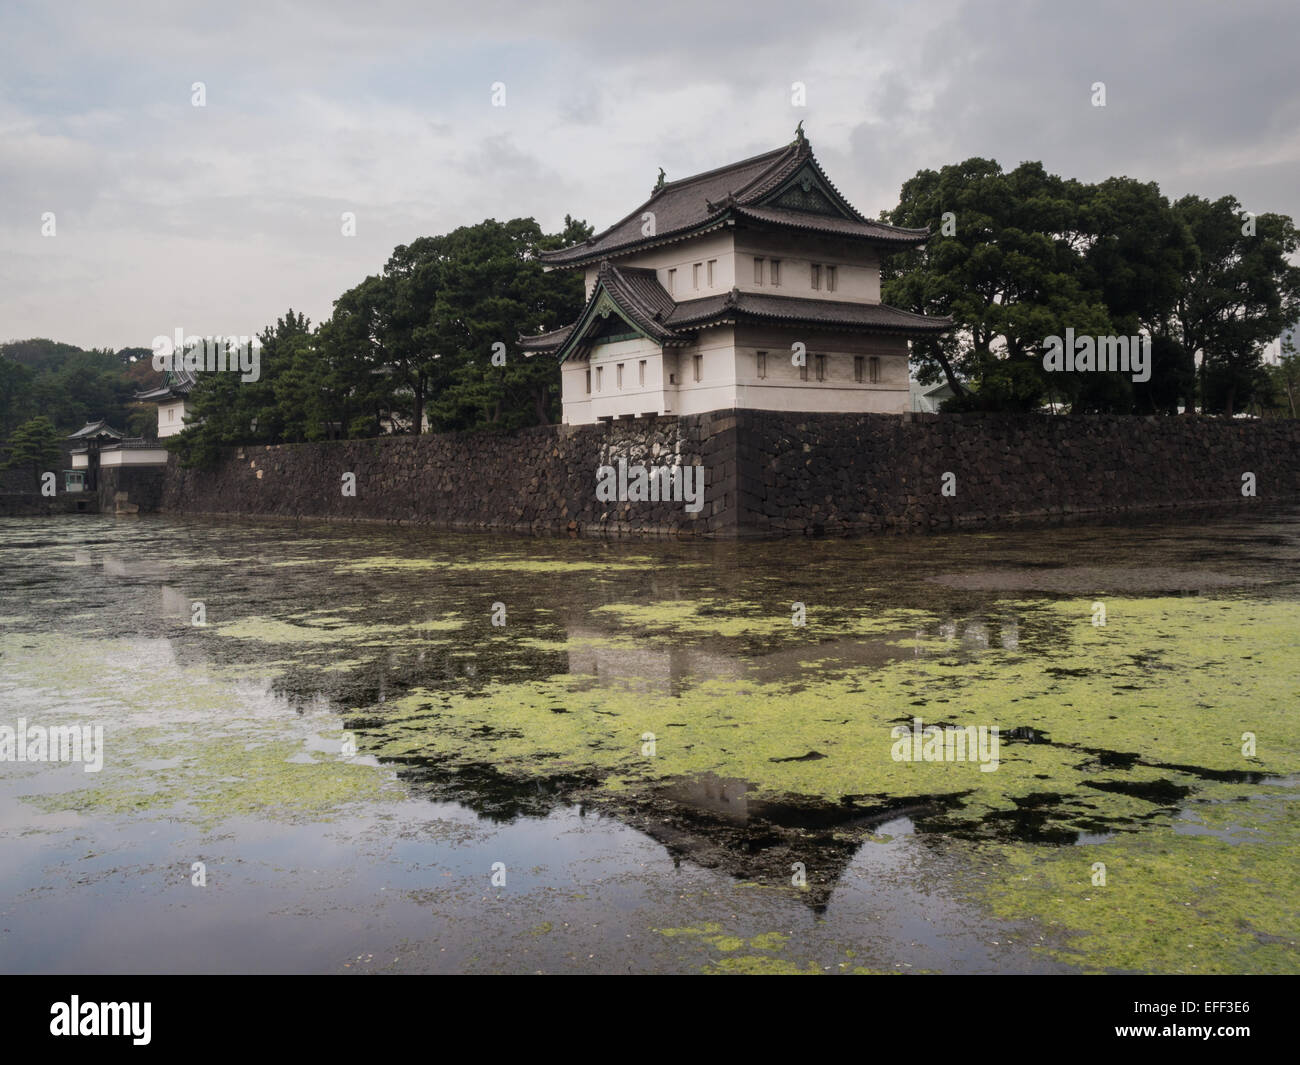 Palais Impérial de Tokyo reflète dans l'eau des douves Banque D'Images